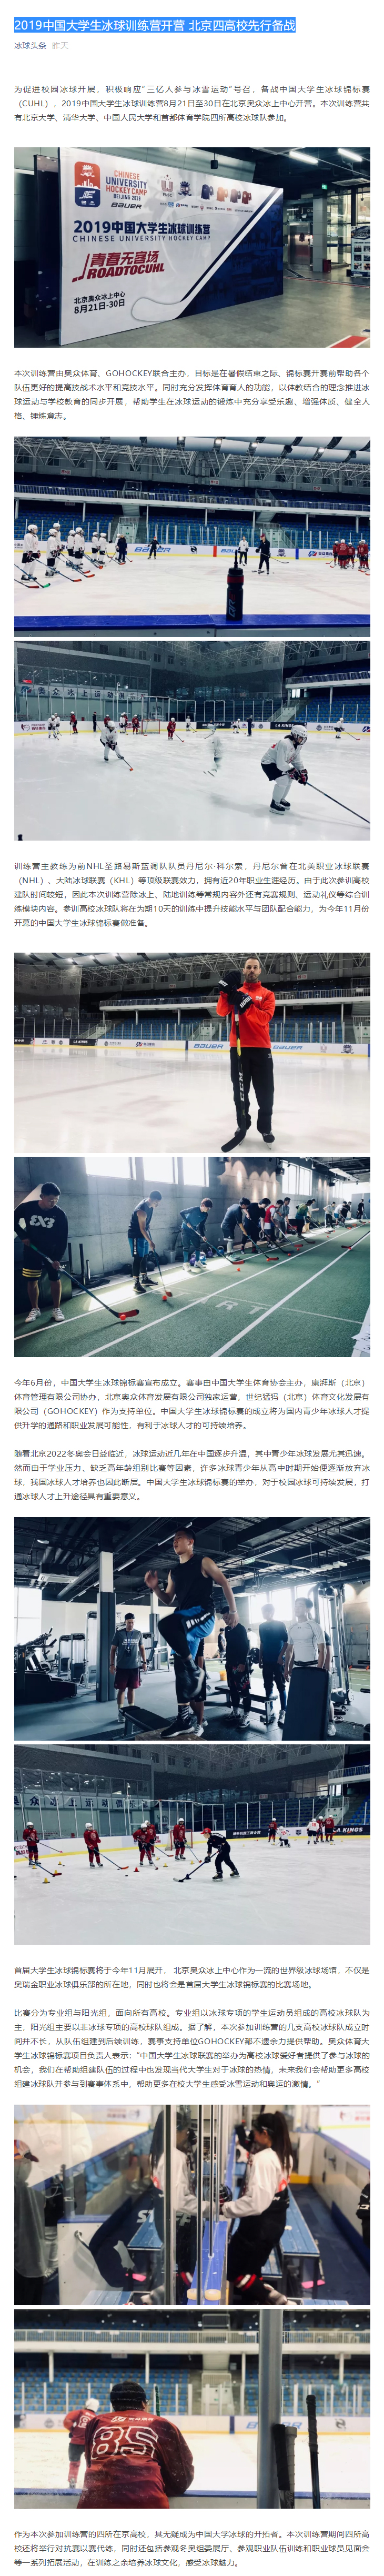 2019中国大学生冰球训练营开营 北京四高校先行备战.jpg